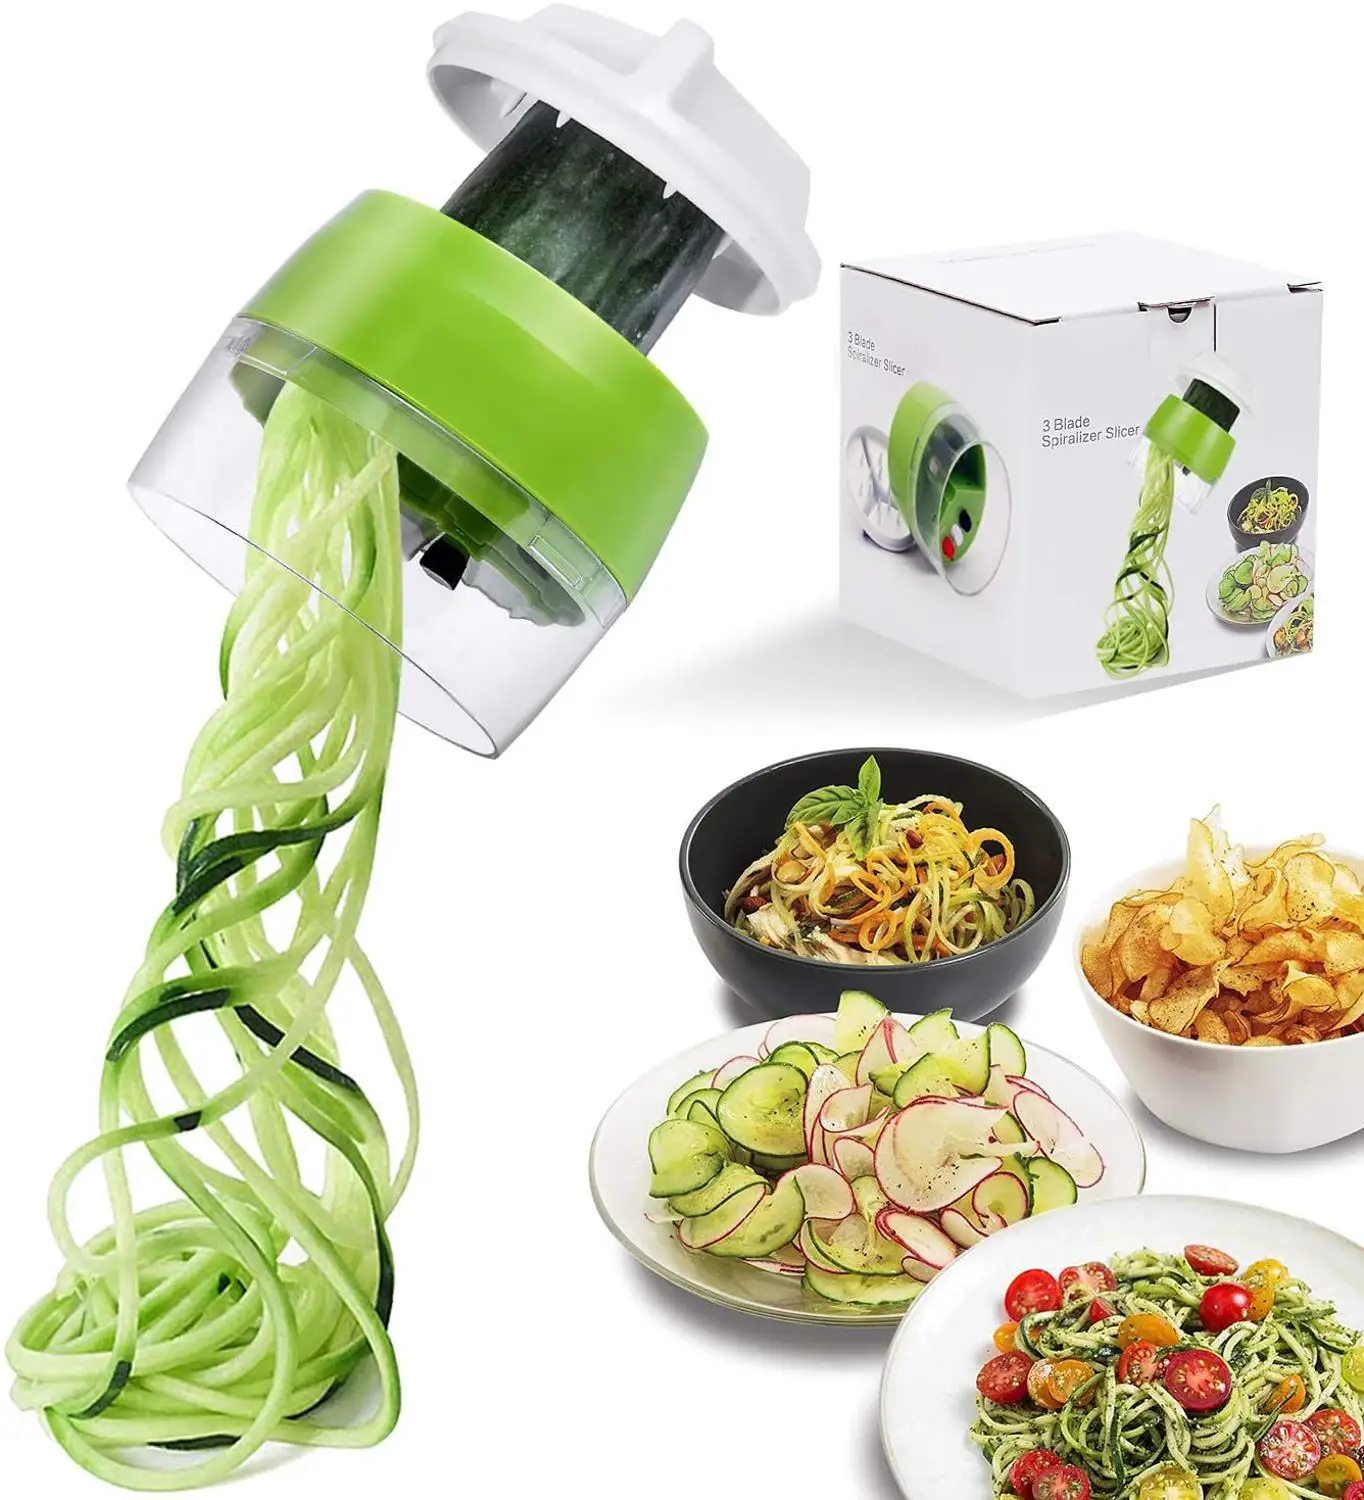 

Handheld Vegetable Spiralizer Fruit Slicer 4 in 1 Adjustable Spiral Grater Cutter Salad Tools Zucchini Noodle Spaghetti Maker